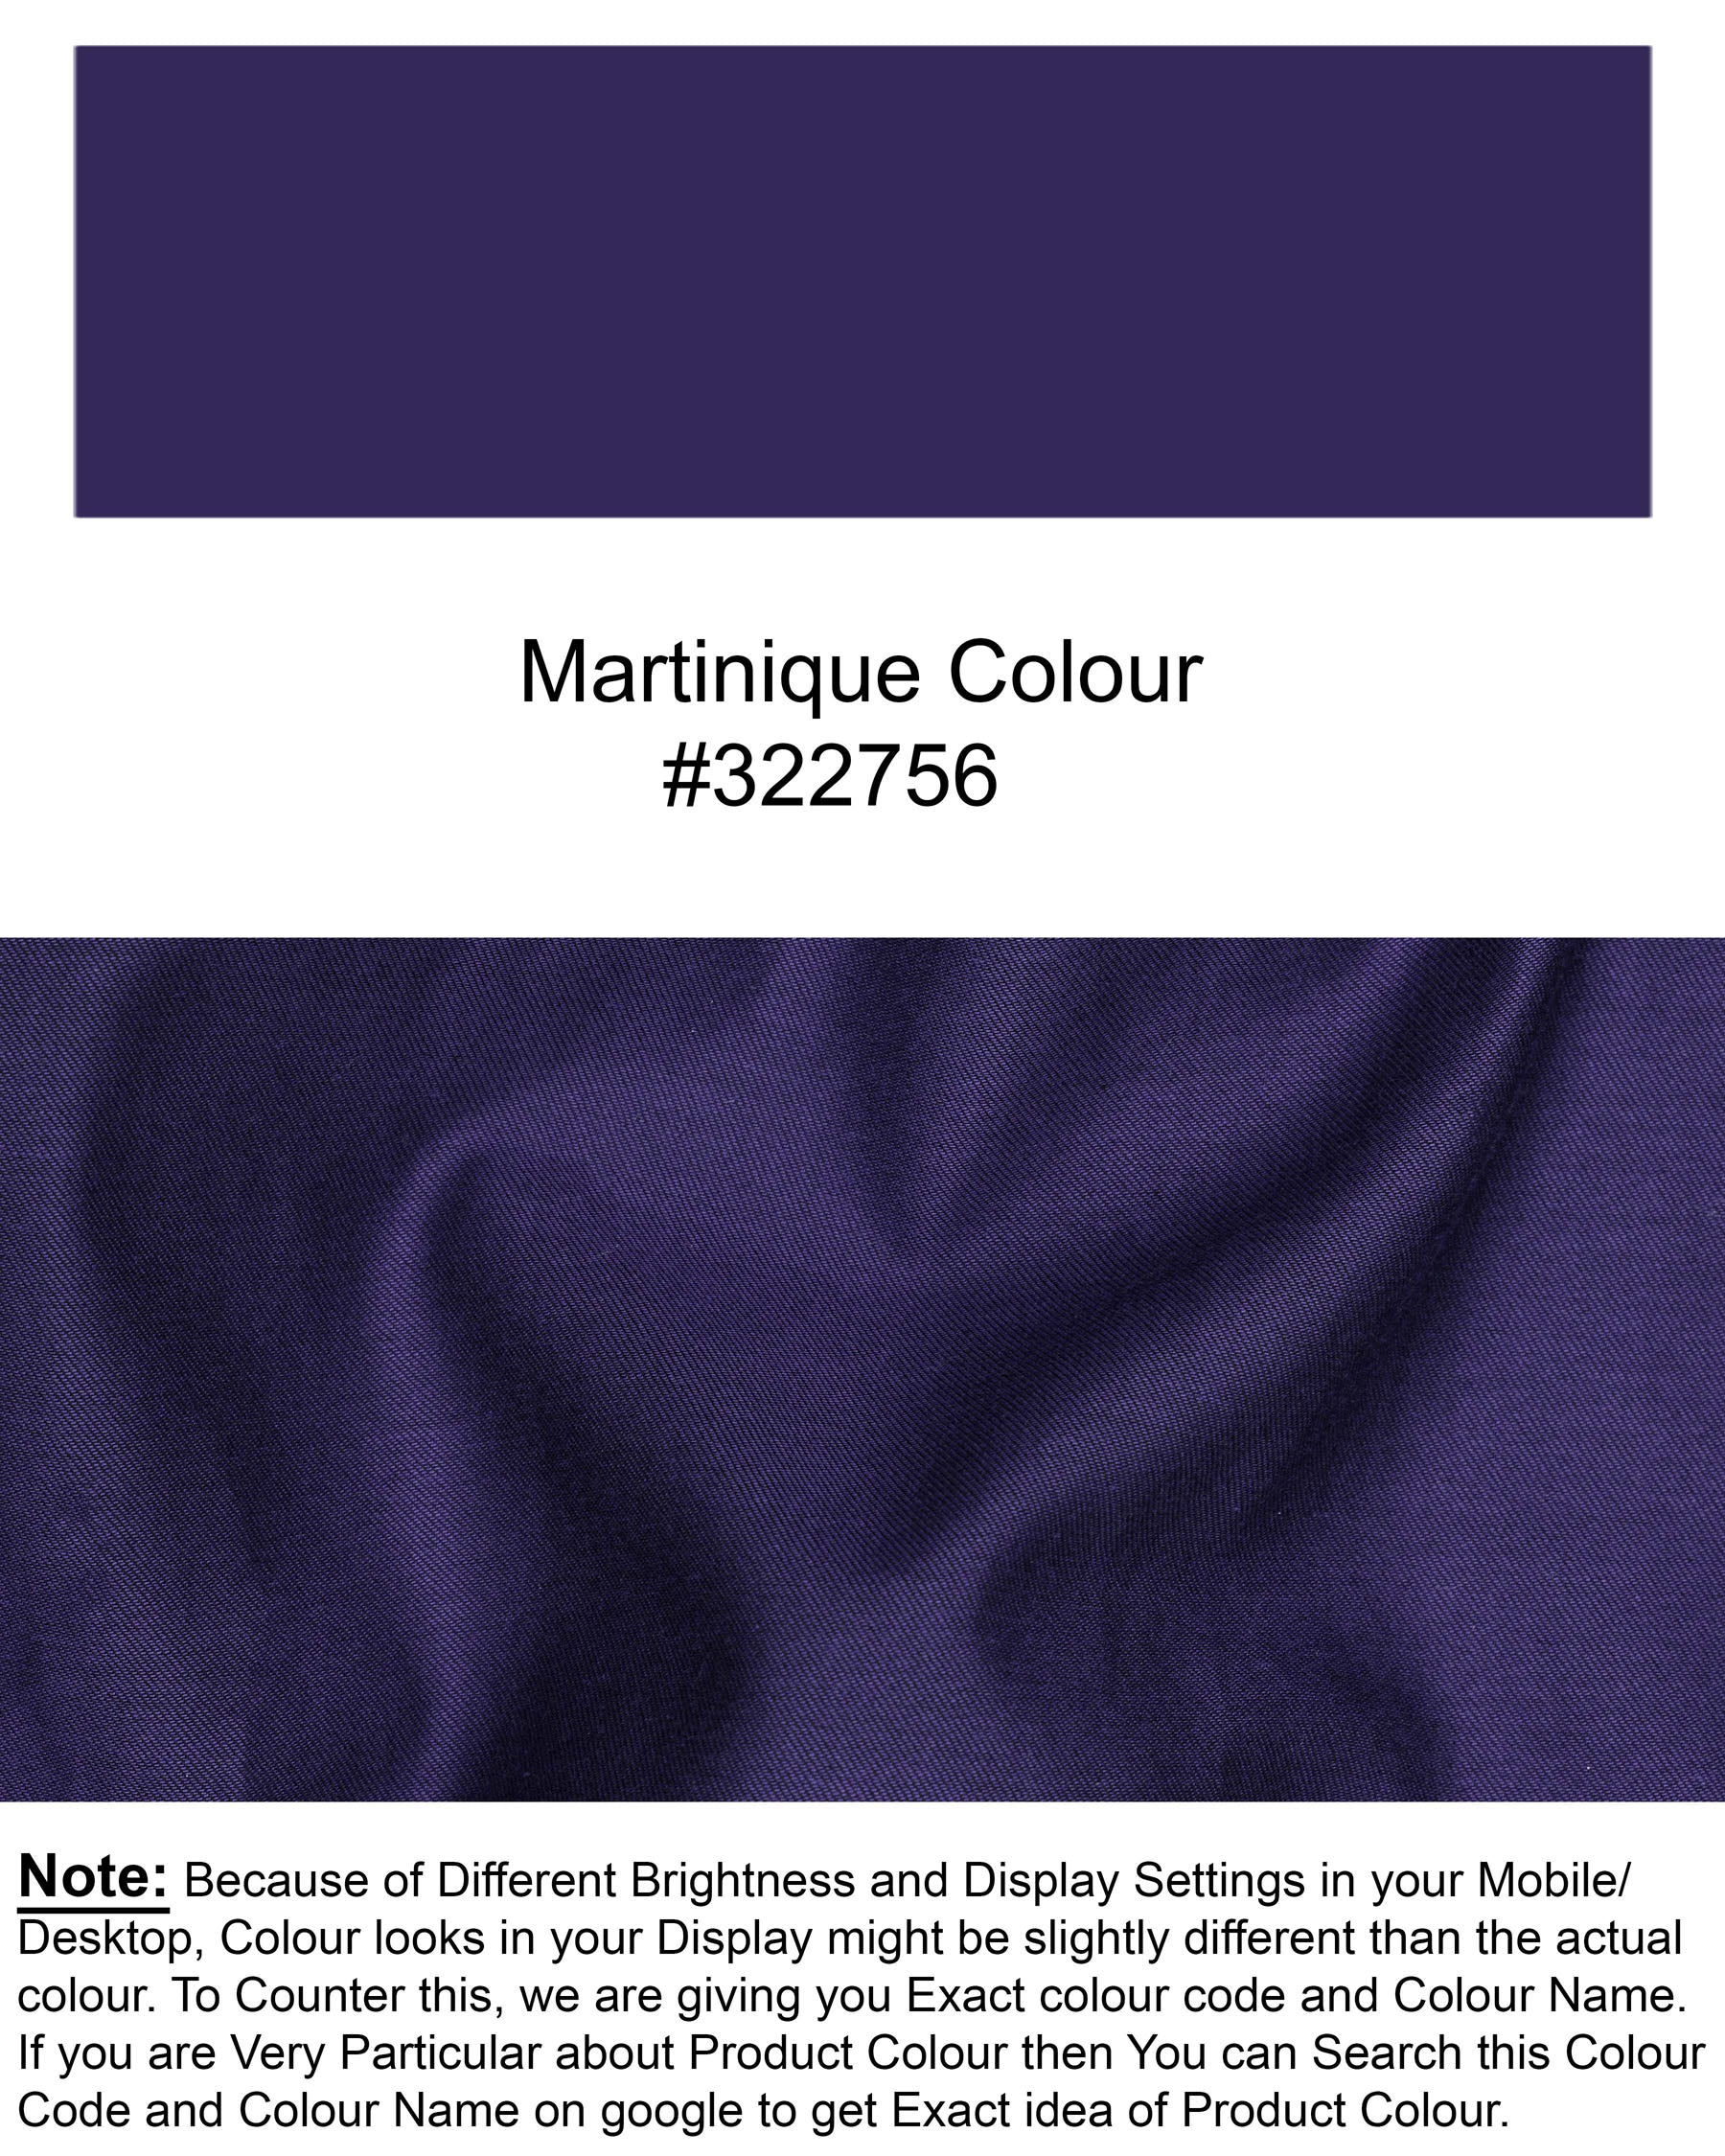 Martinique Blue Super Soft Premium Cotton Shirt 6798-BLK-38,6798-BLK-38,6798-BLK-39,6798-BLK-39,6798-BLK-40,6798-BLK-40,6798-BLK-42,6798-BLK-42,6798-BLK-44,6798-BLK-44,6798-BLK-46,6798-BLK-46,6798-BLK-48,6798-BLK-48,6798-BLK-50,6798-BLK-50,6798-BLK-52,6798-BLK-52